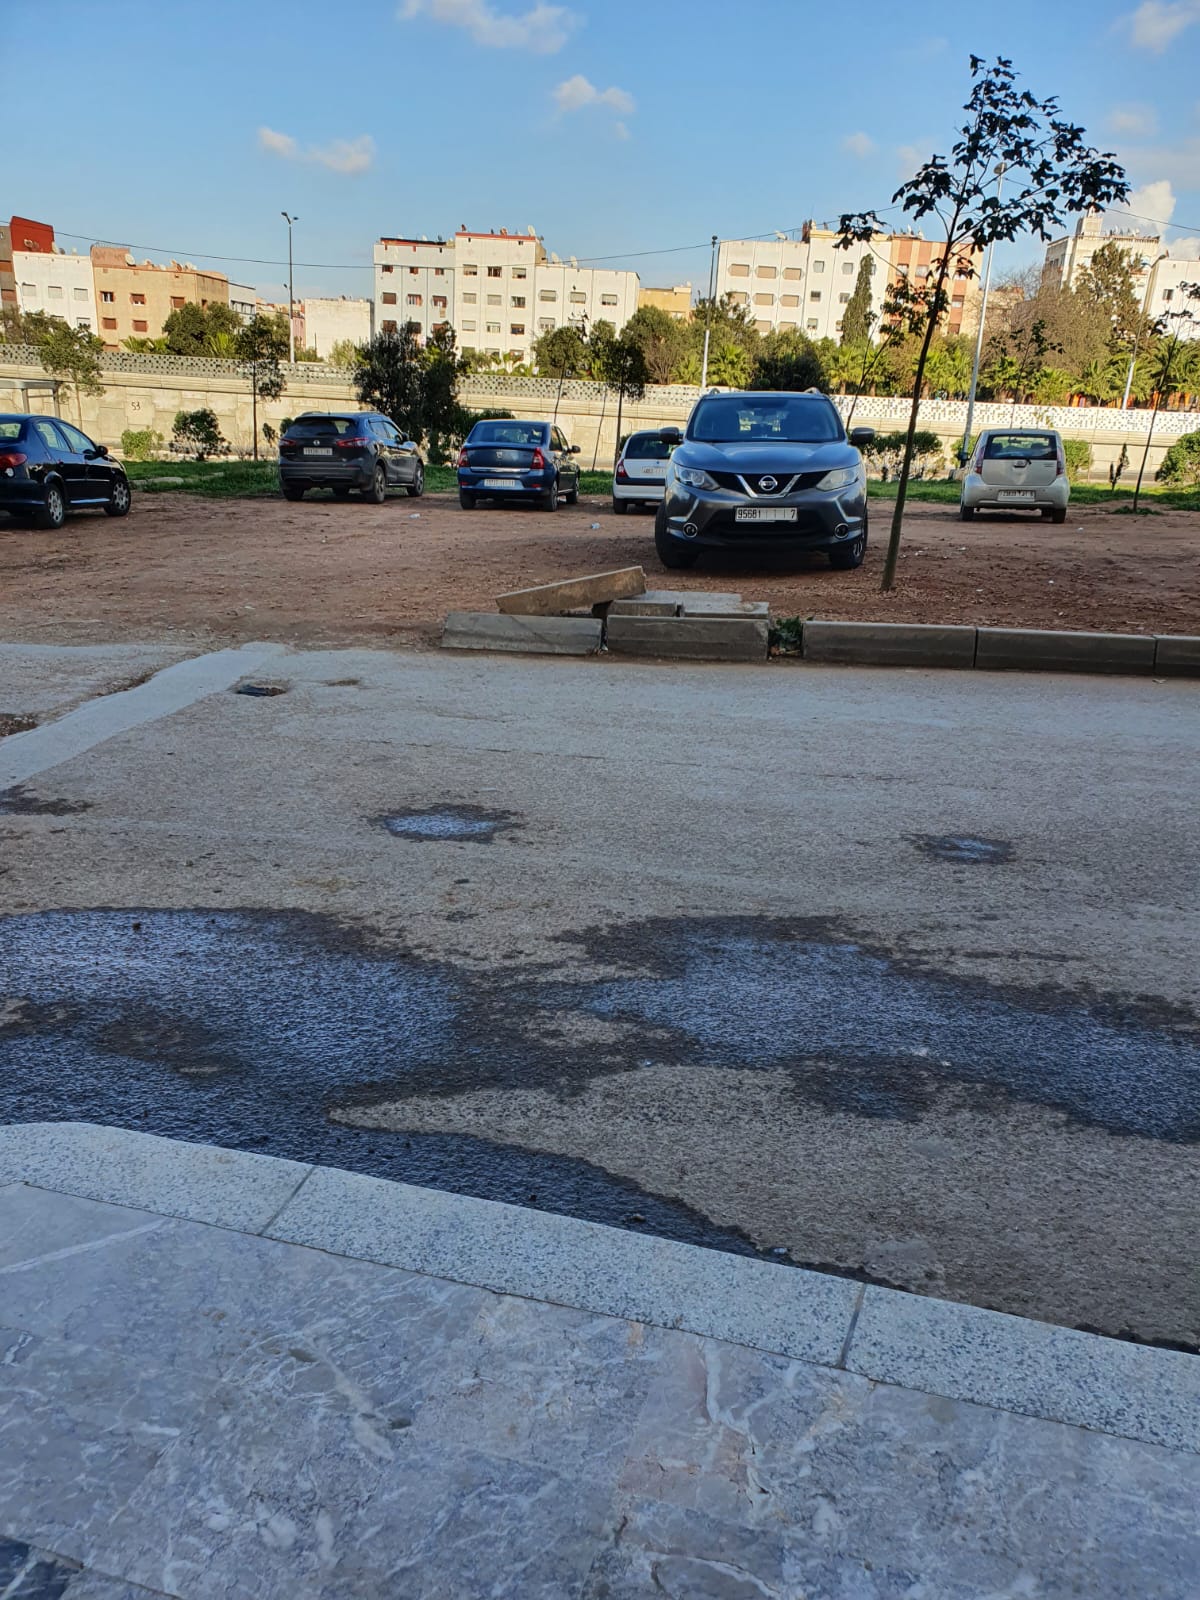 من المسؤول عن تحويل فضاء أخضر إلى مكان لوقوف السيارات بشارع محمد السادس مقاطعة عين الشق؟